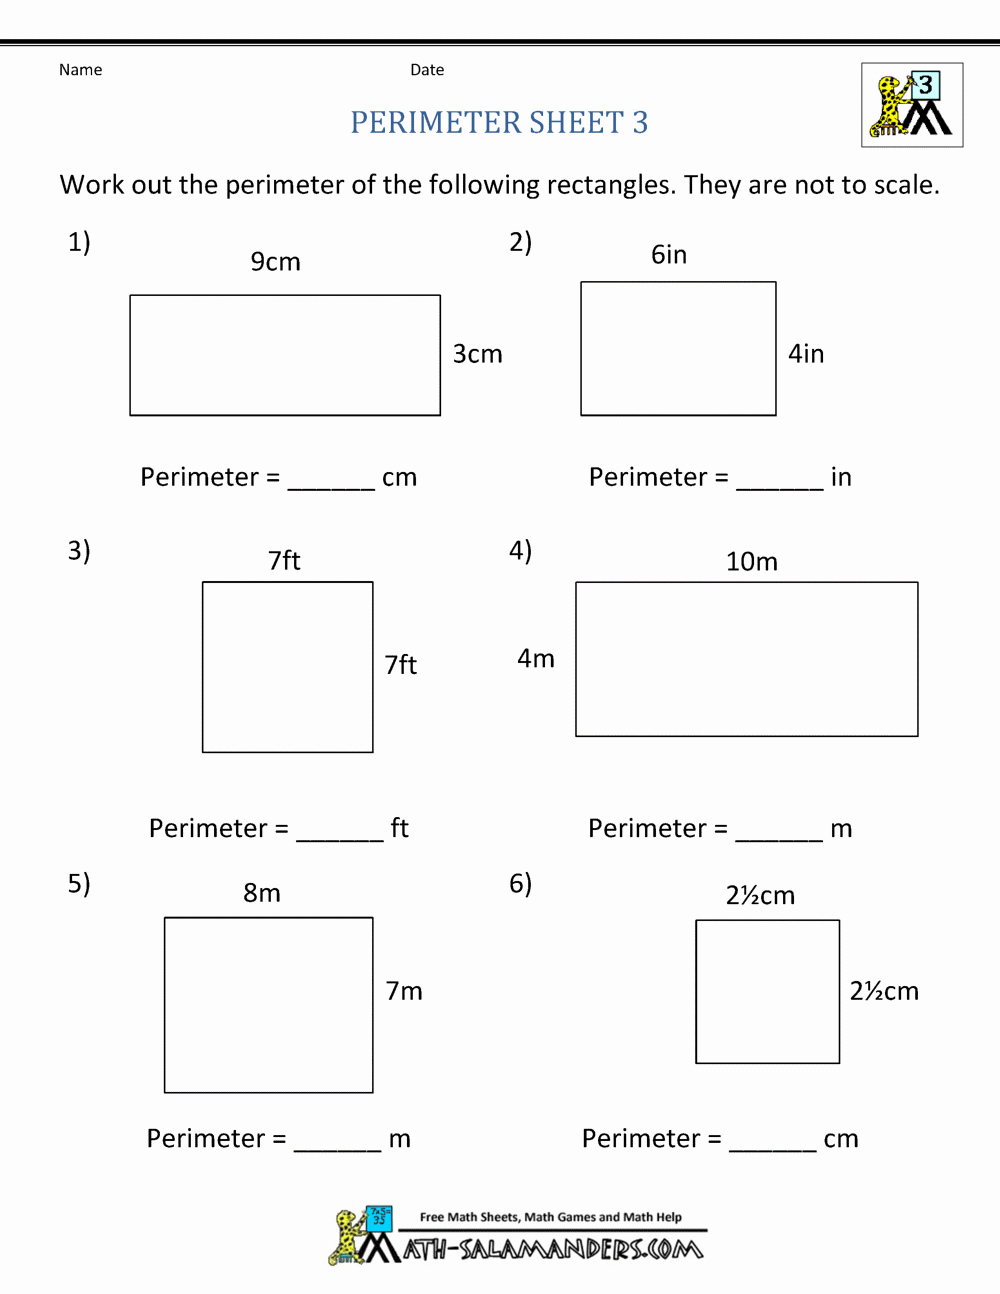 Perimeter Worksheet for 3rd Grade Lovely Perimeter Worksheets